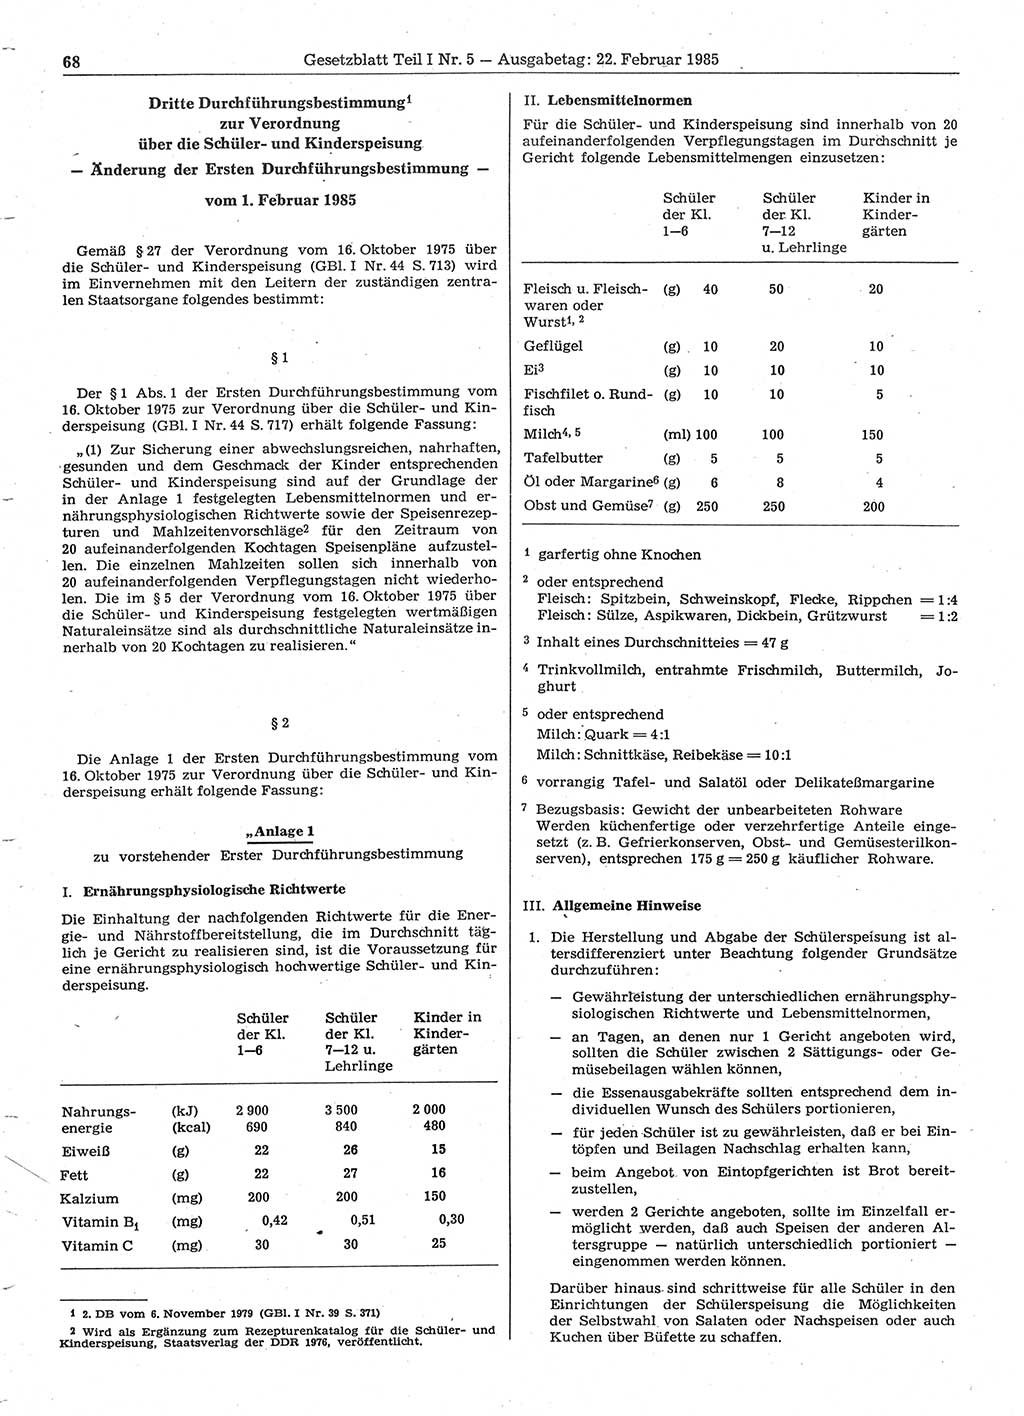 Gesetzblatt (GBl.) der Deutschen Demokratischen Republik (DDR) Teil Ⅰ 1985, Seite 68 (GBl. DDR Ⅰ 1985, S. 68)